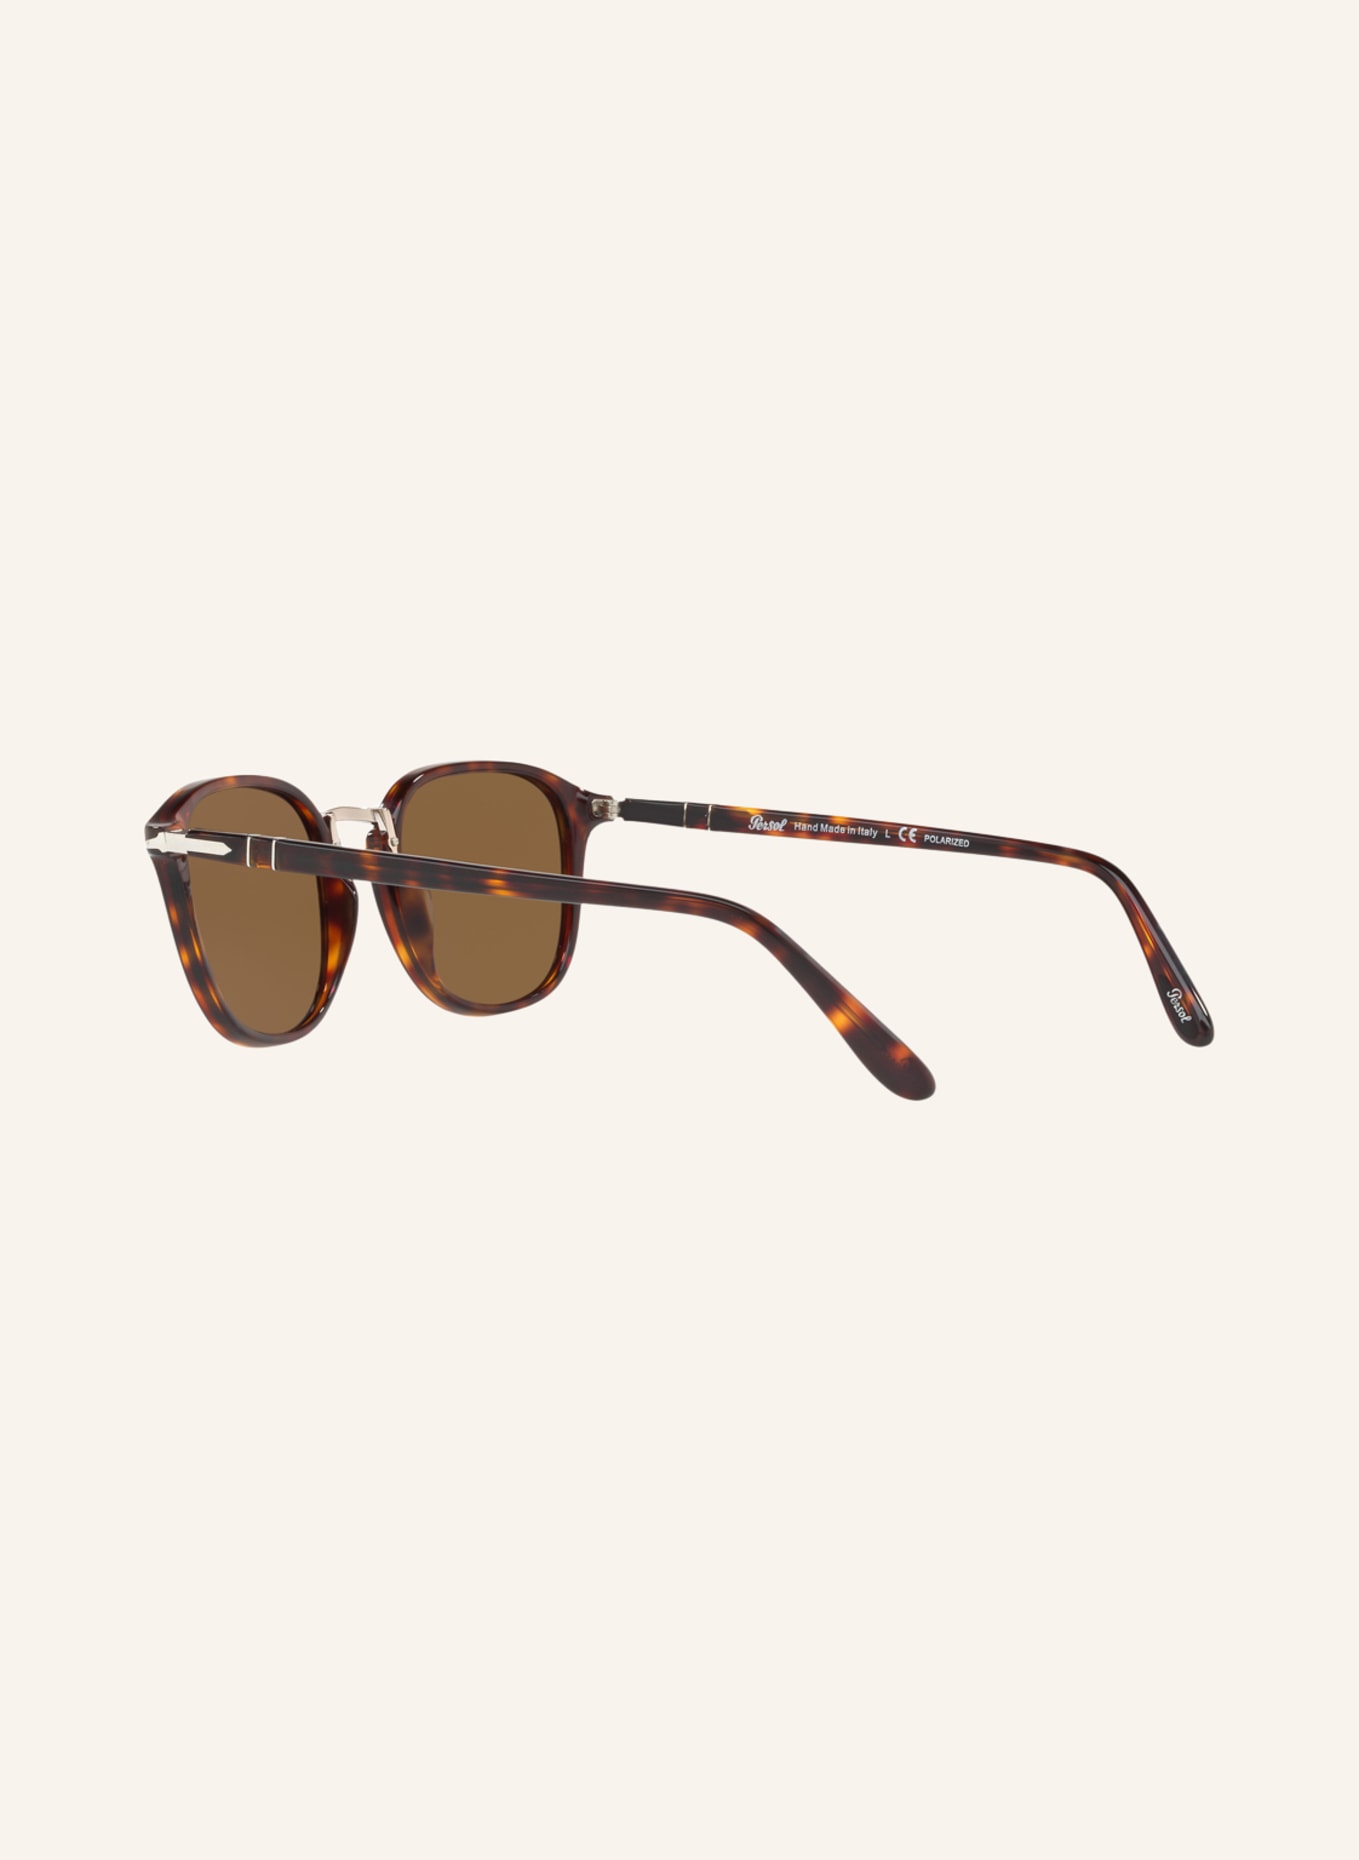 Persol Sunglasses PO3186S, Color: 24/ 57 - HAVANA - BROWN POLARIZED (Image 4)